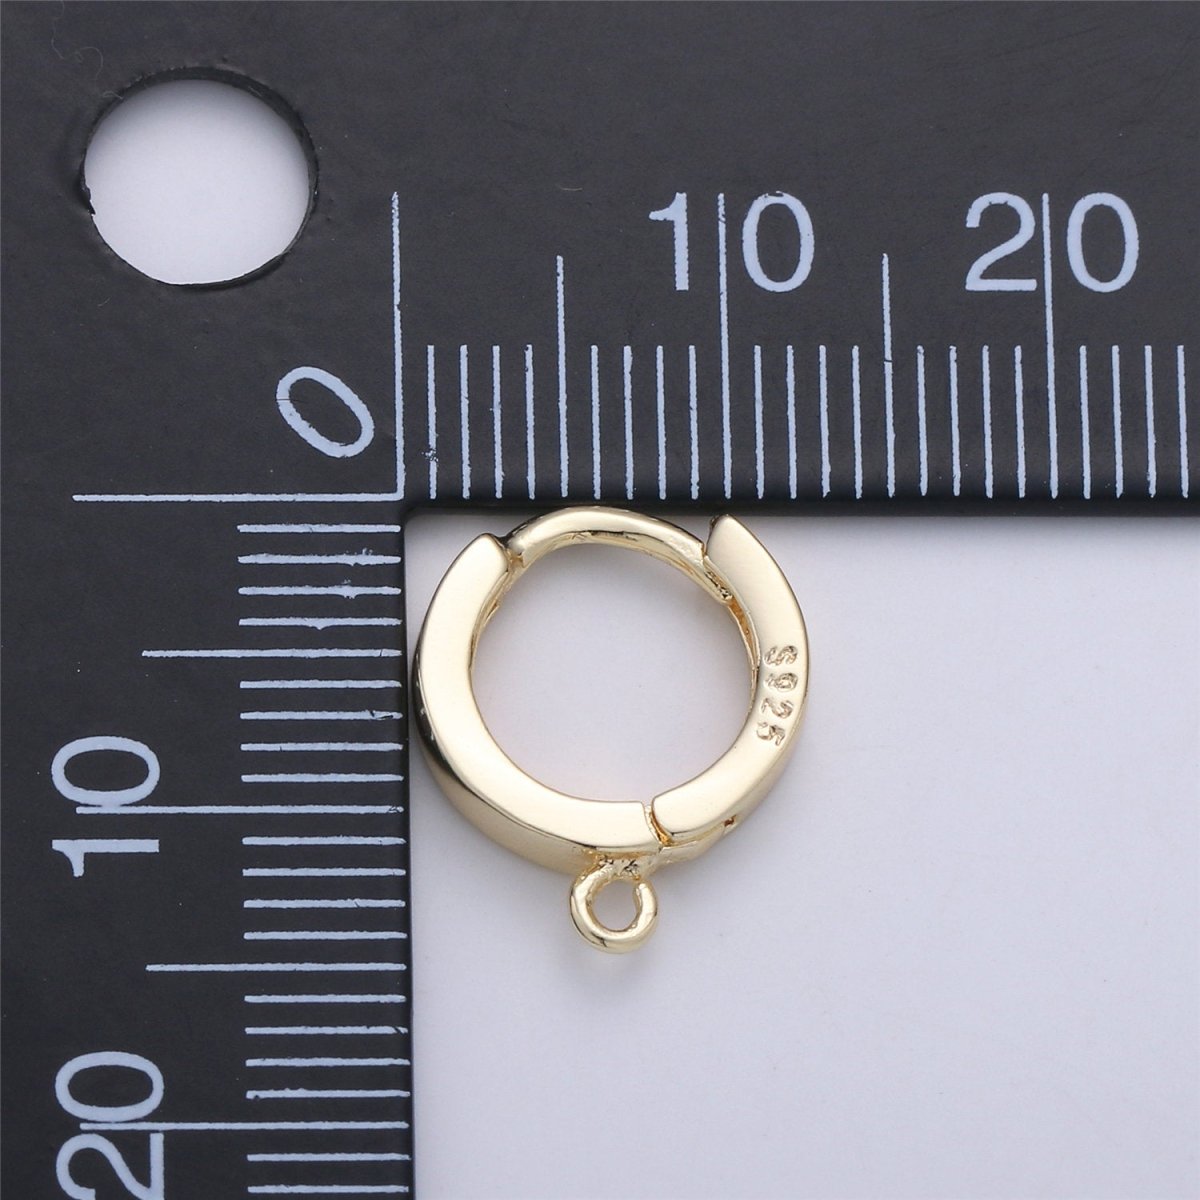 Vermeil Gold Earring Findings - Open Link earring Post, 14k yellow gold ...